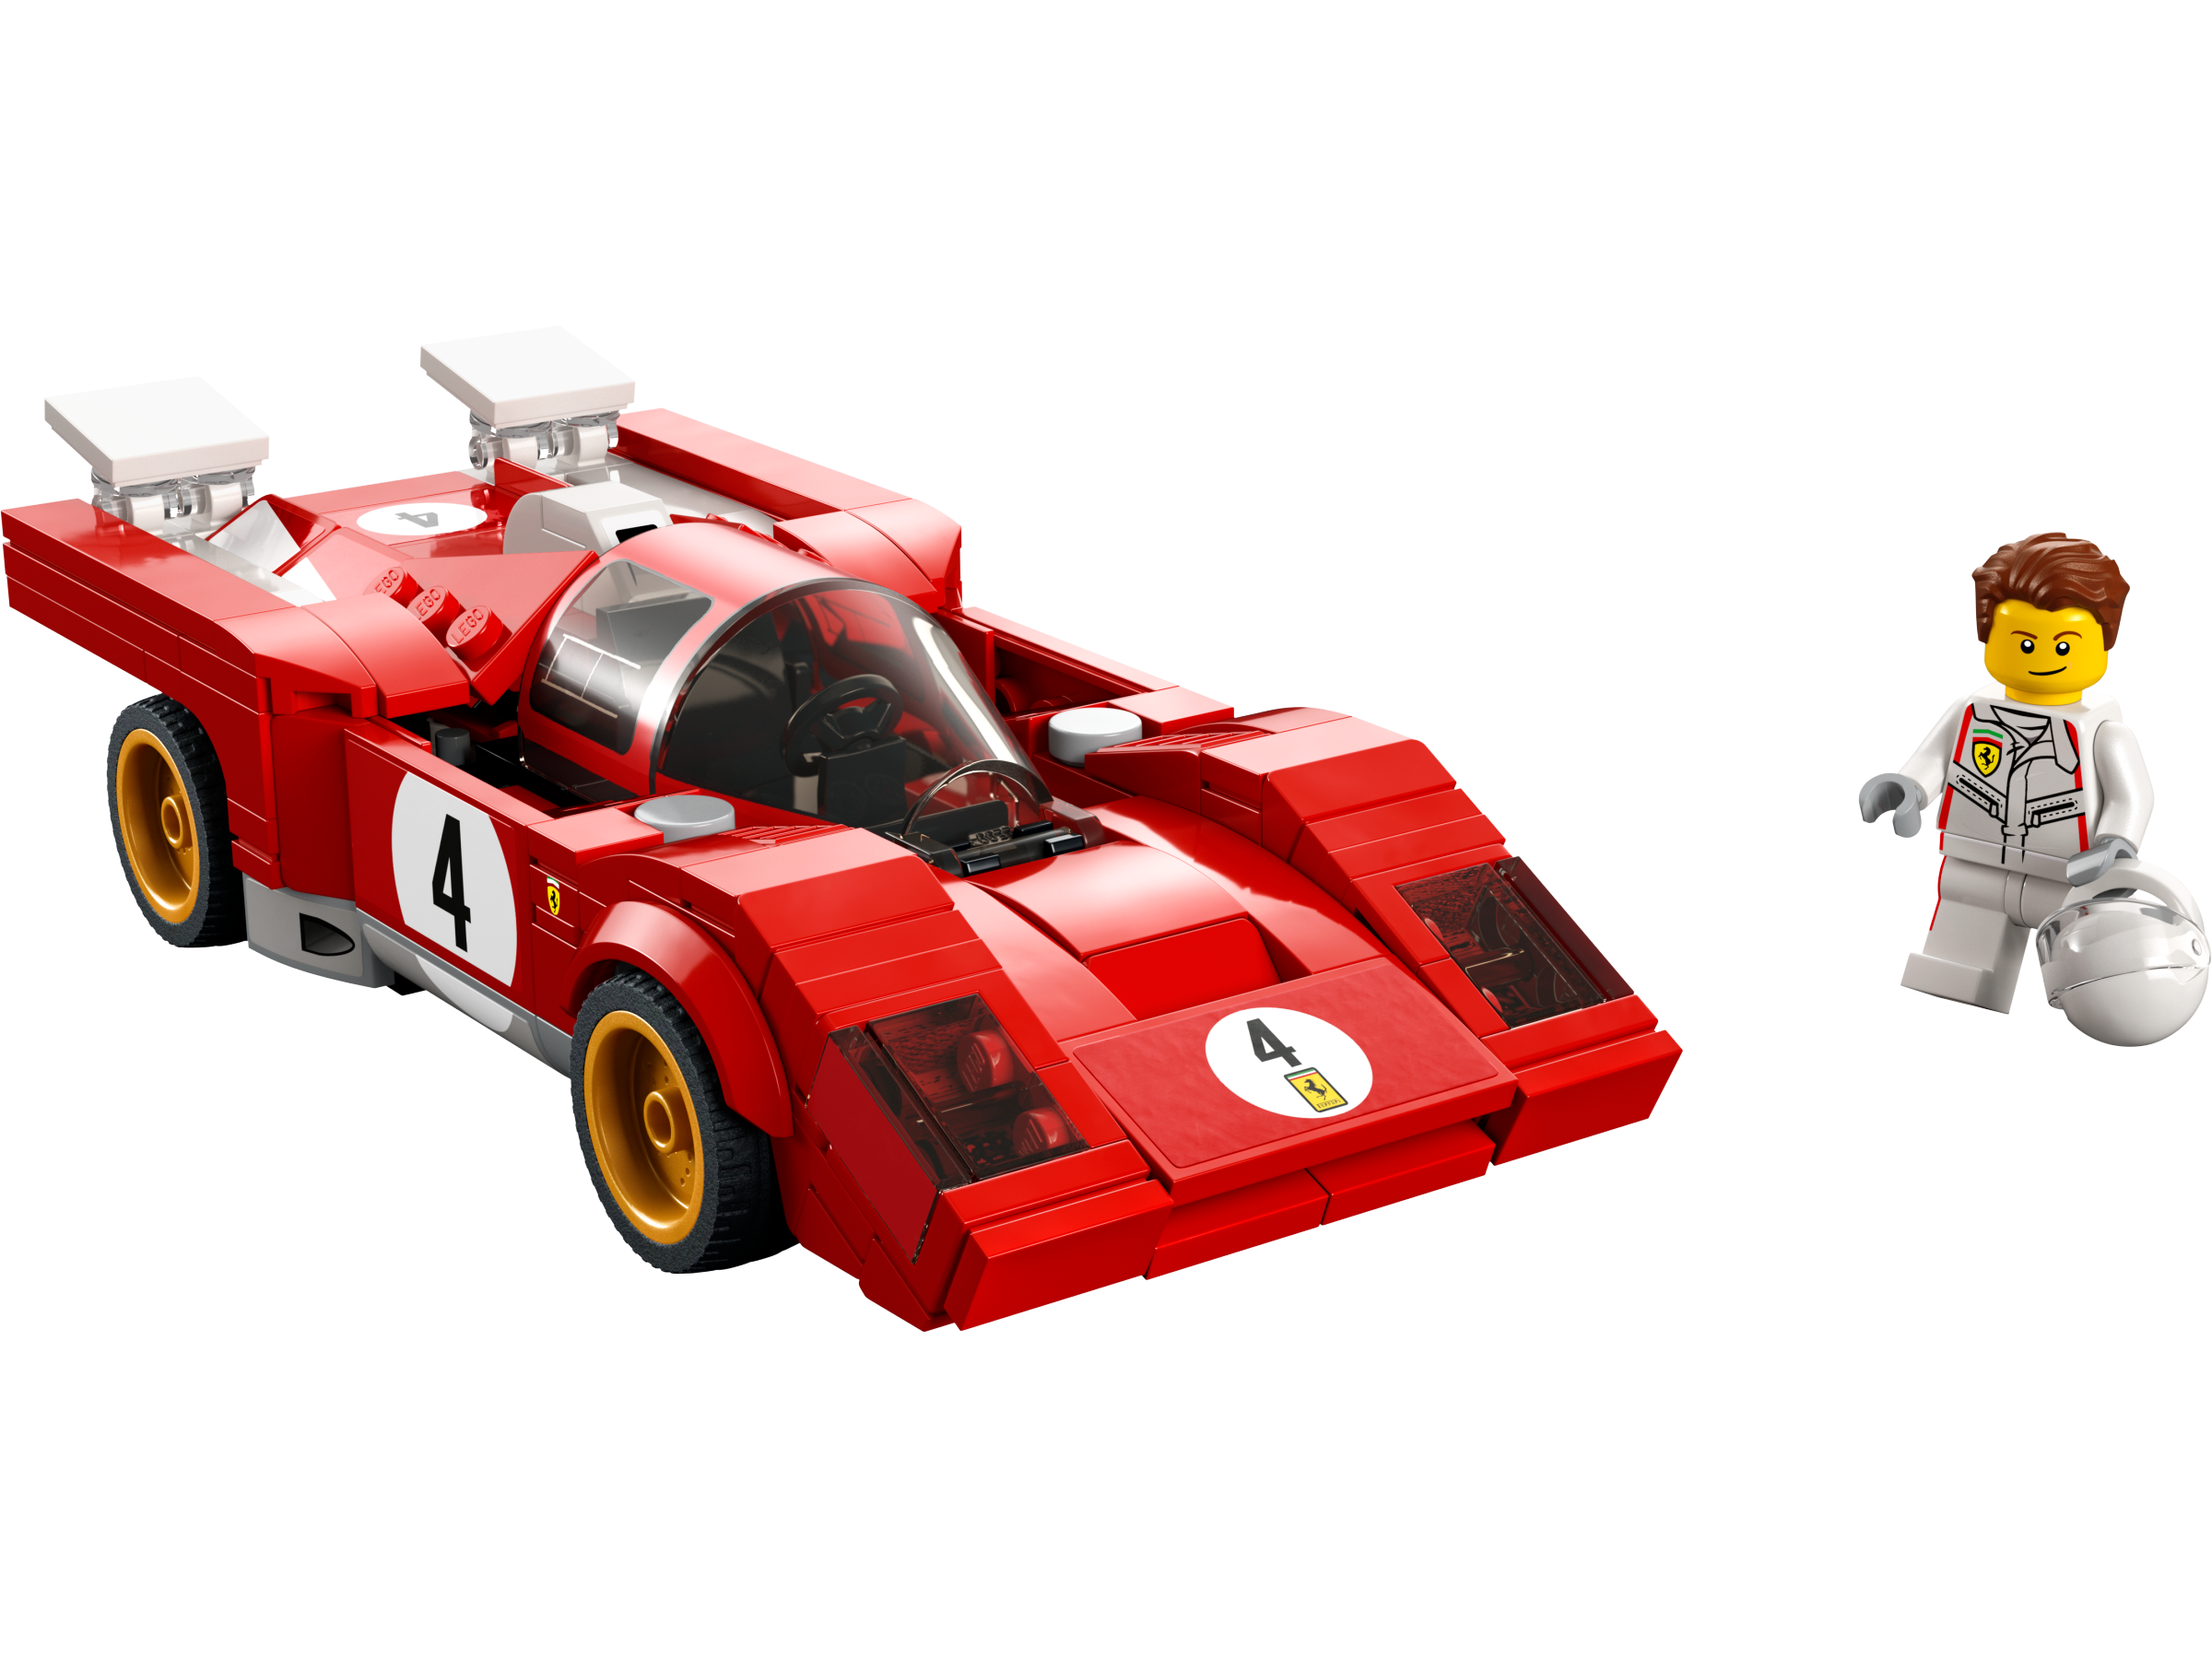 1970 フェラーリ 512 M 76906 | スピードチャンピオンズ |レゴ®ストア